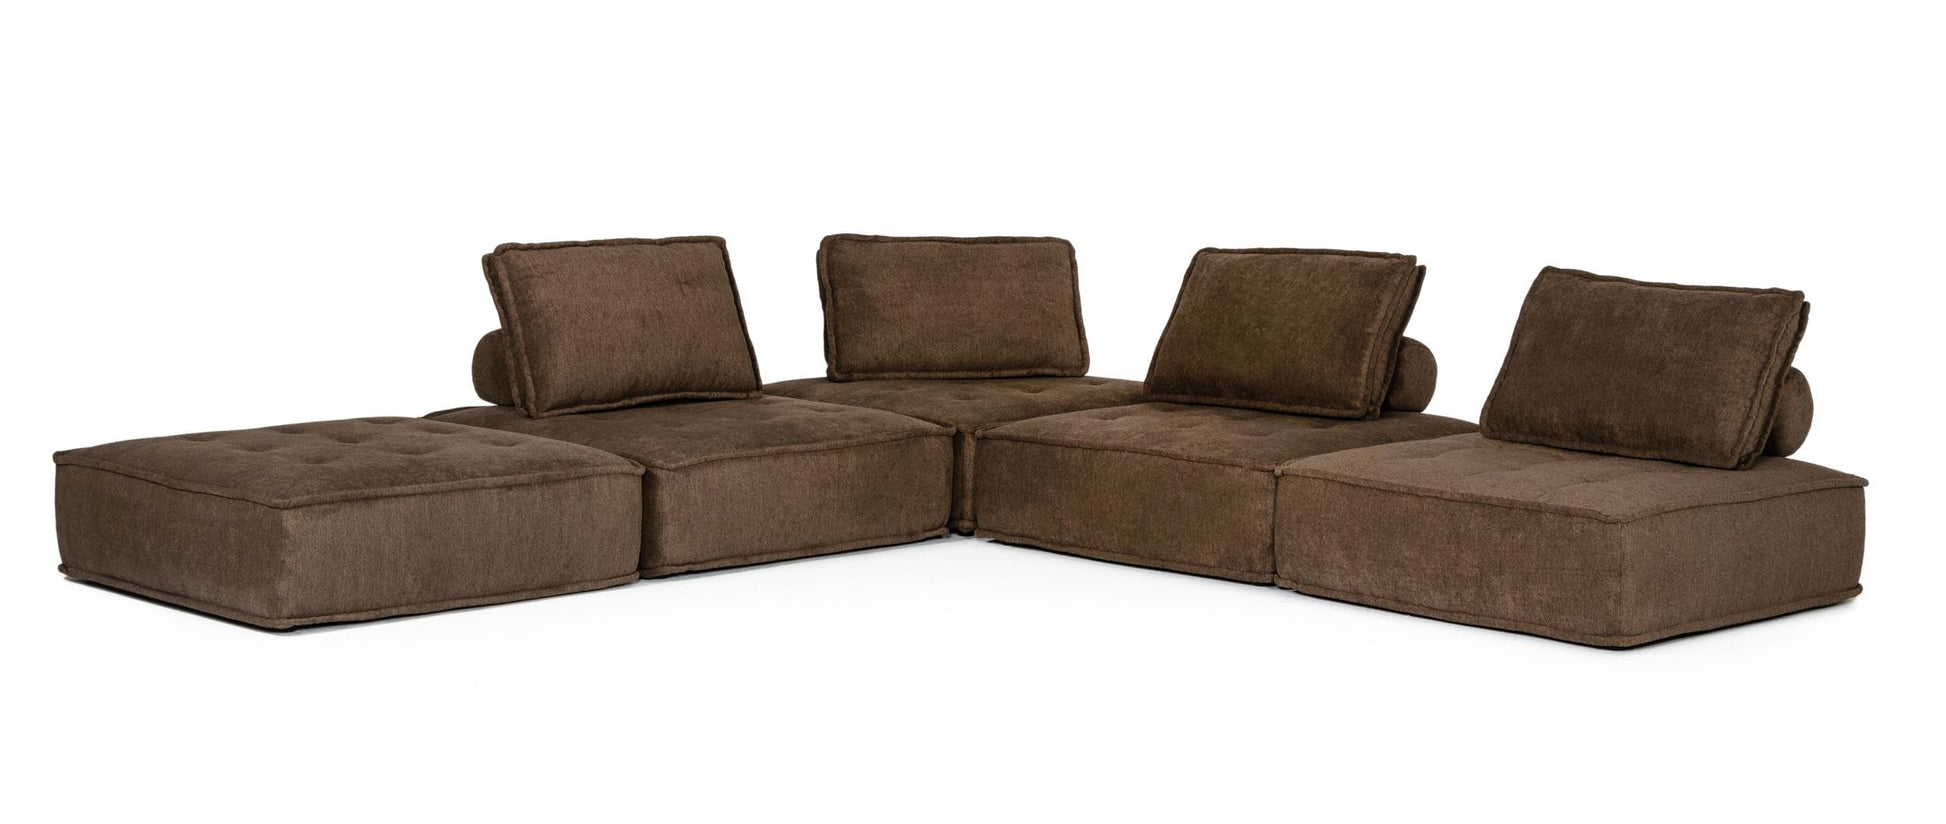 VIG Furniture Divani Casa Nolden Brown Fabric Modular Sectional Sofa